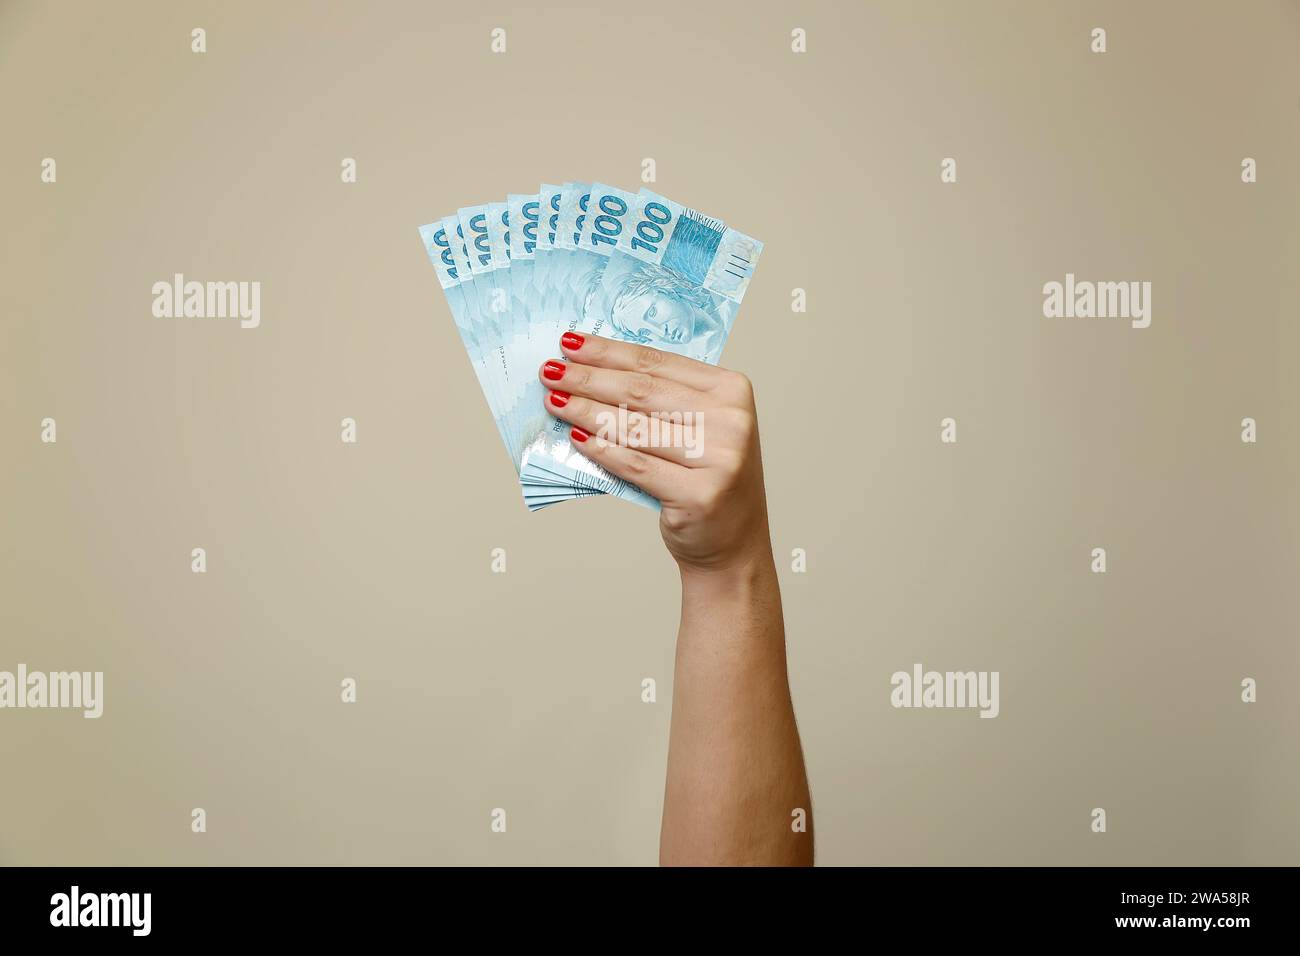 Plusieurs centaines de factures réelles - argent du Brésil dans une main de womans avec des ongles rouges Banque D'Images